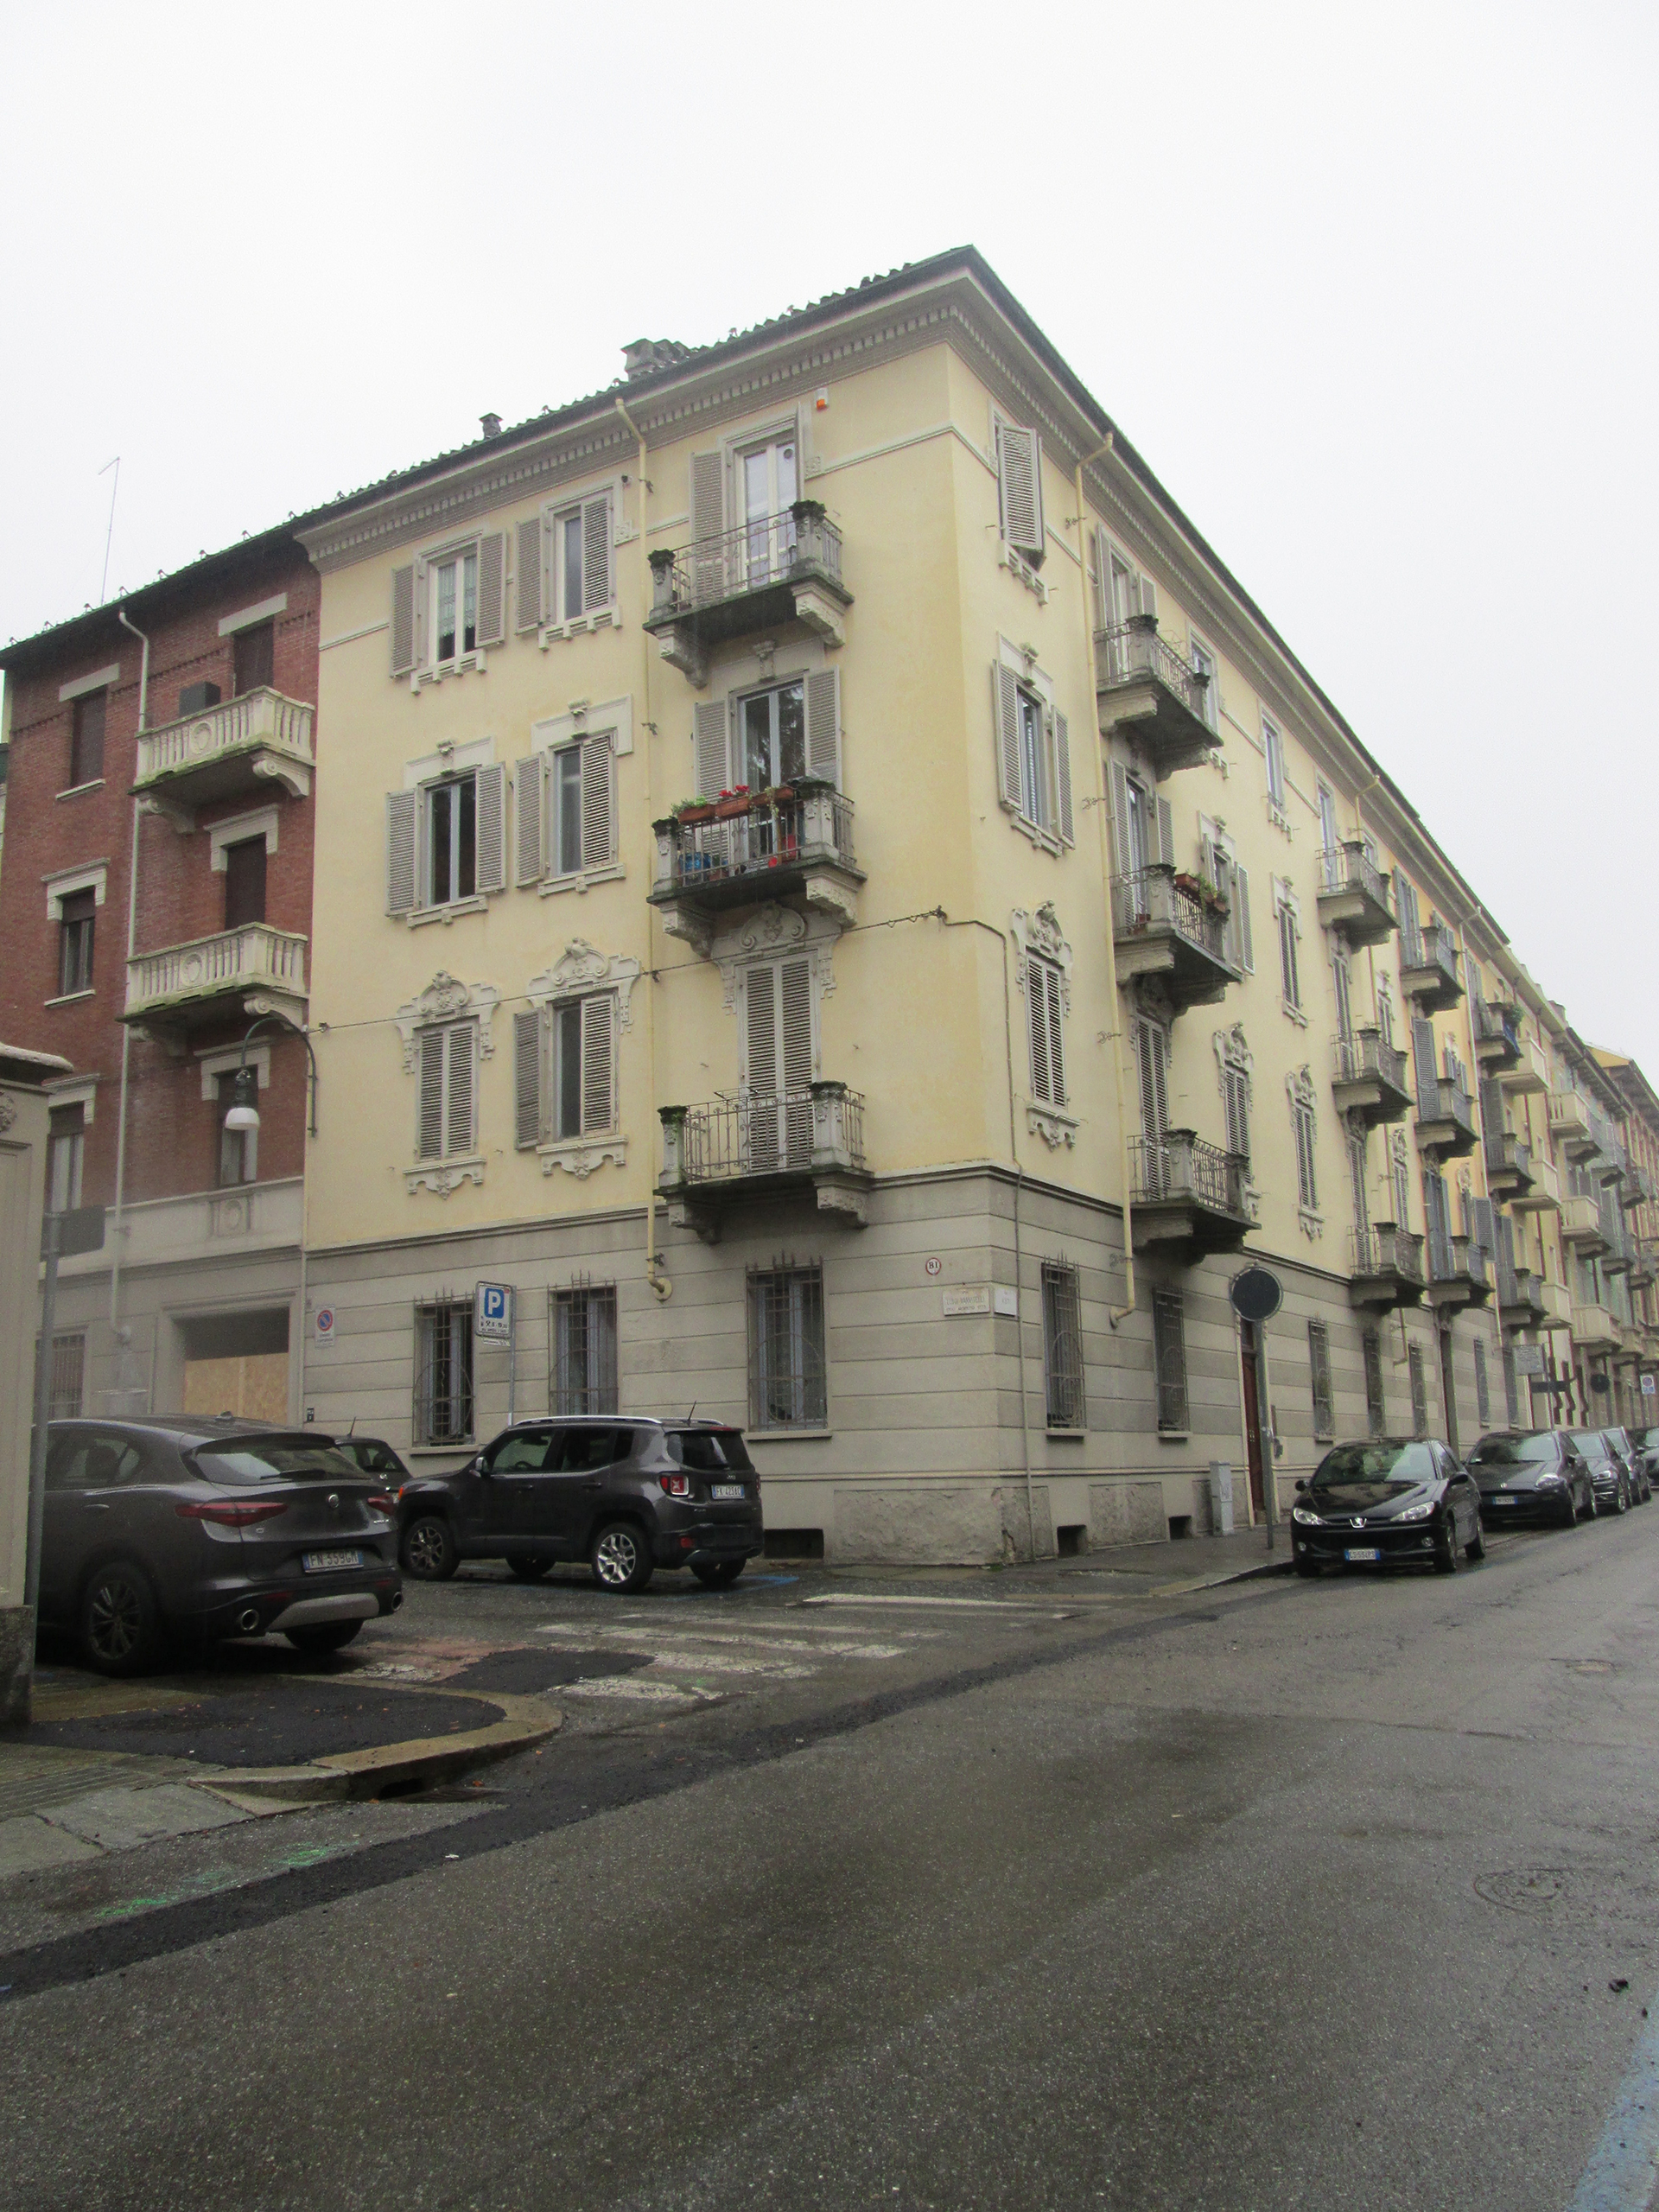 Edificio di abitazione civile (casa, privata) - Torino (TO) 